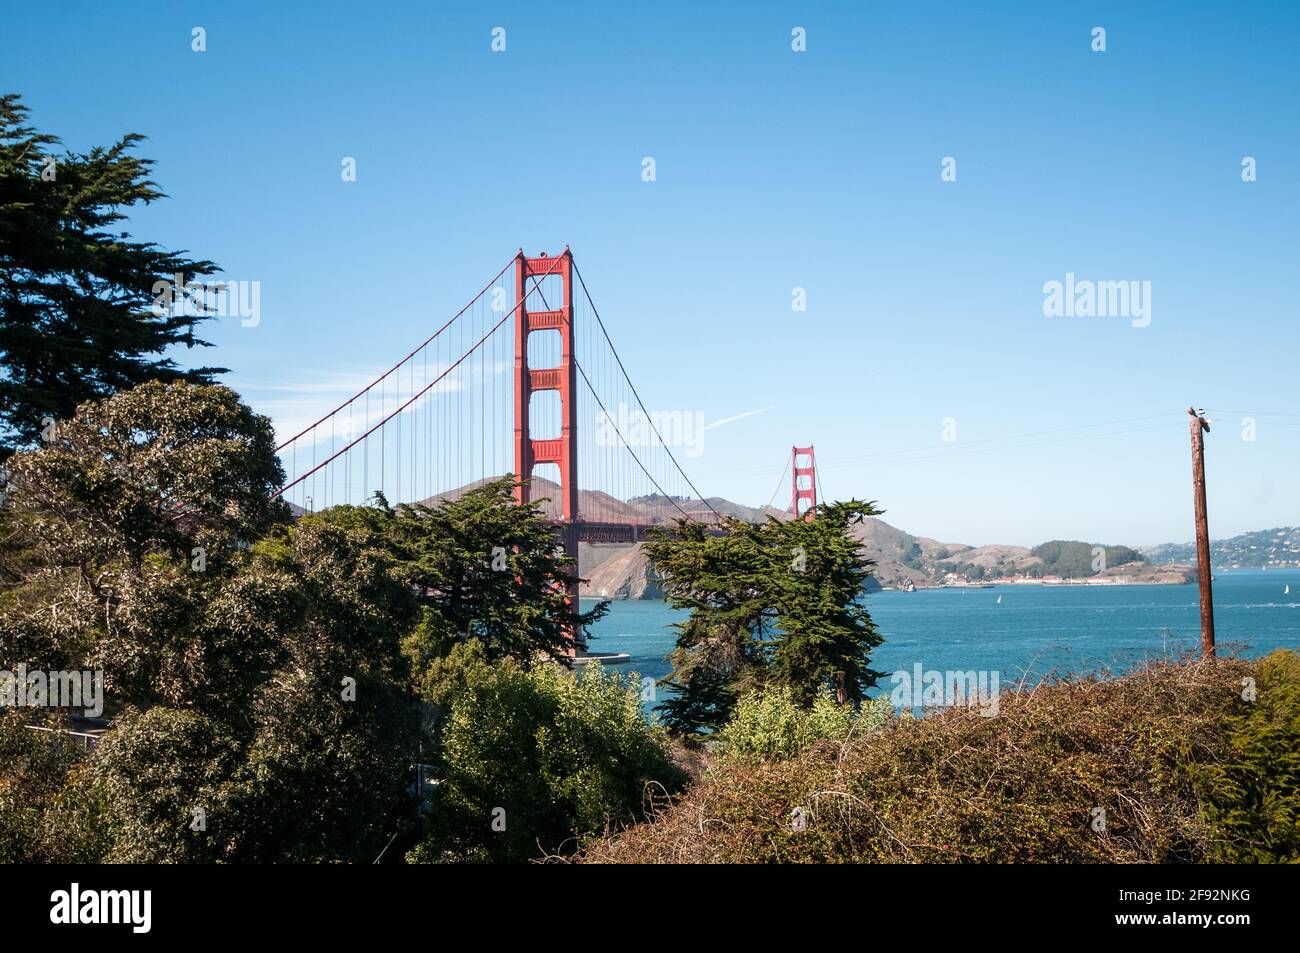 The Golden Gate Bridge is a suspension bridge that spans the